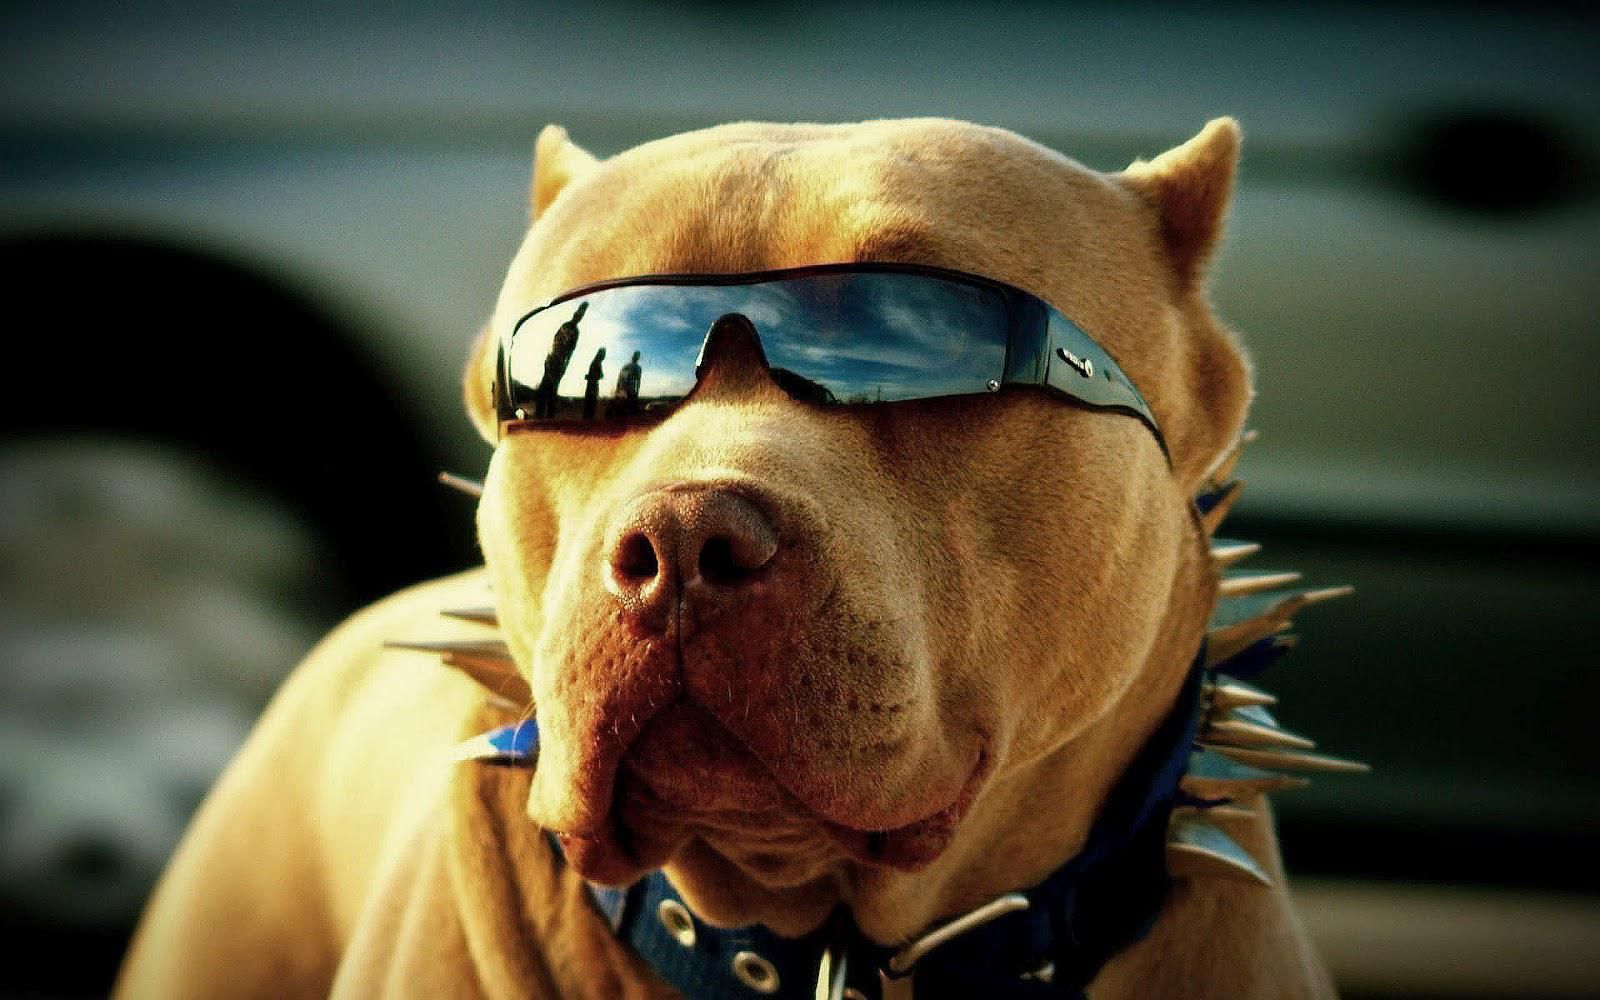 Chó đeo kính là một hình ảnh vô cùng độc đáo và hấp dẫn để bạn có thể thưởng thức. Hãy xem ảnh chó đeo kính và cùng nhau chiêm ngưỡng vẻ đẹp và thông minh của loài vật này.